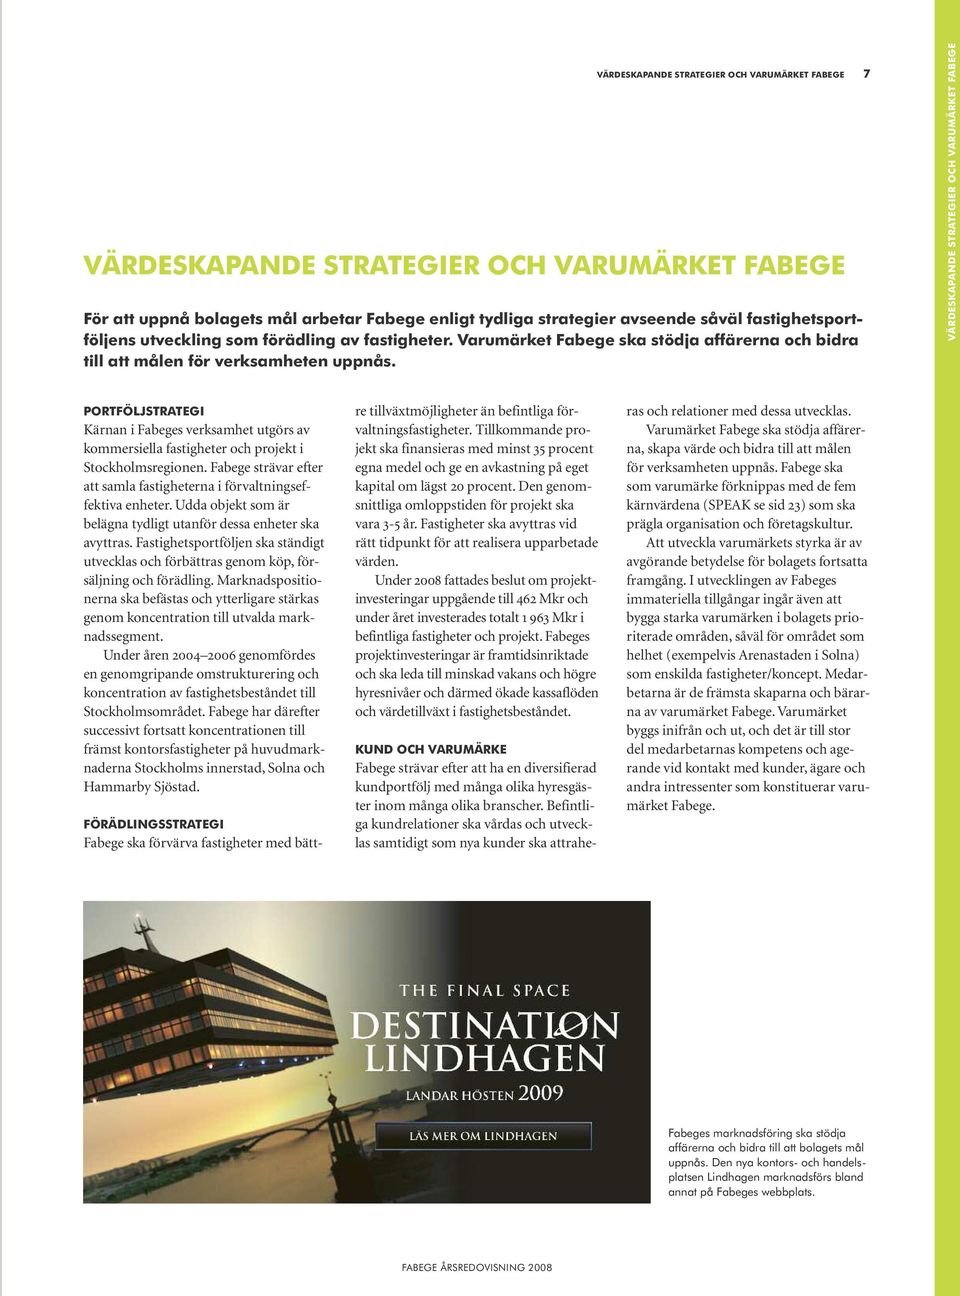 VÄRDESKAPANDE STRATEGIER OCH VARUMÄRKET FABEGE PORTFÖLJSTRATEGI Kärnan i Fabeges verksamhet utgörs av kommersiella fastigheter och projekt i Stockholmsregionen.